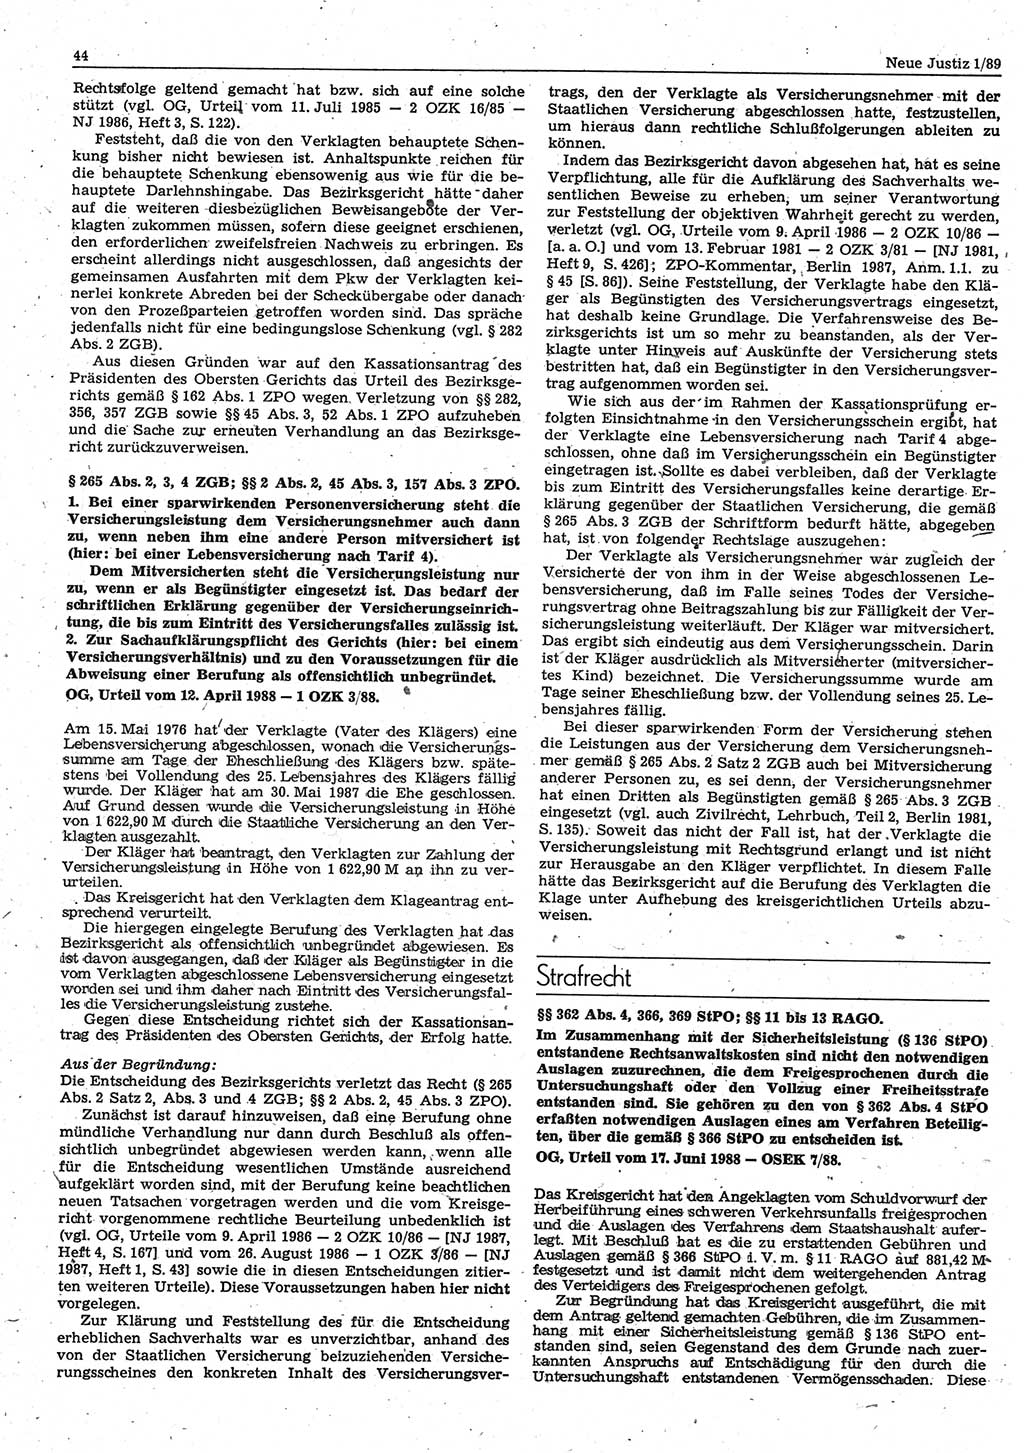 Neue Justiz (NJ), Zeitschrift für sozialistisches Recht und Gesetzlichkeit [Deutsche Demokratische Republik (DDR)], 43. Jahrgang 1989, Seite 44 (NJ DDR 1989, S. 44)